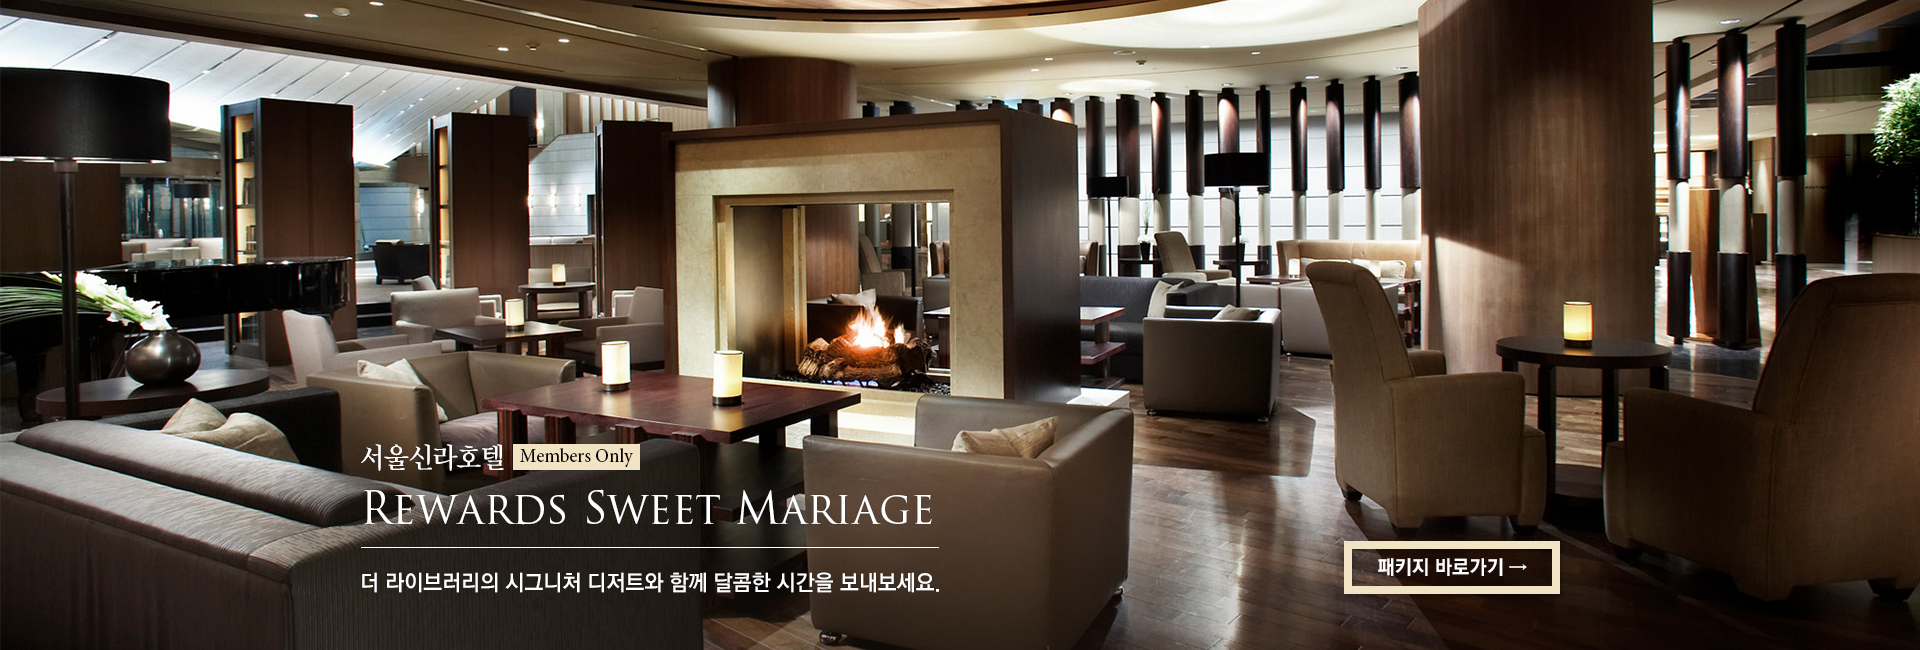 [서울신라호텔] Rewards Sweet Mariage 더 라이브러리의 시그니처 디저트와 함께 달콤한 시간을 보내보세요.